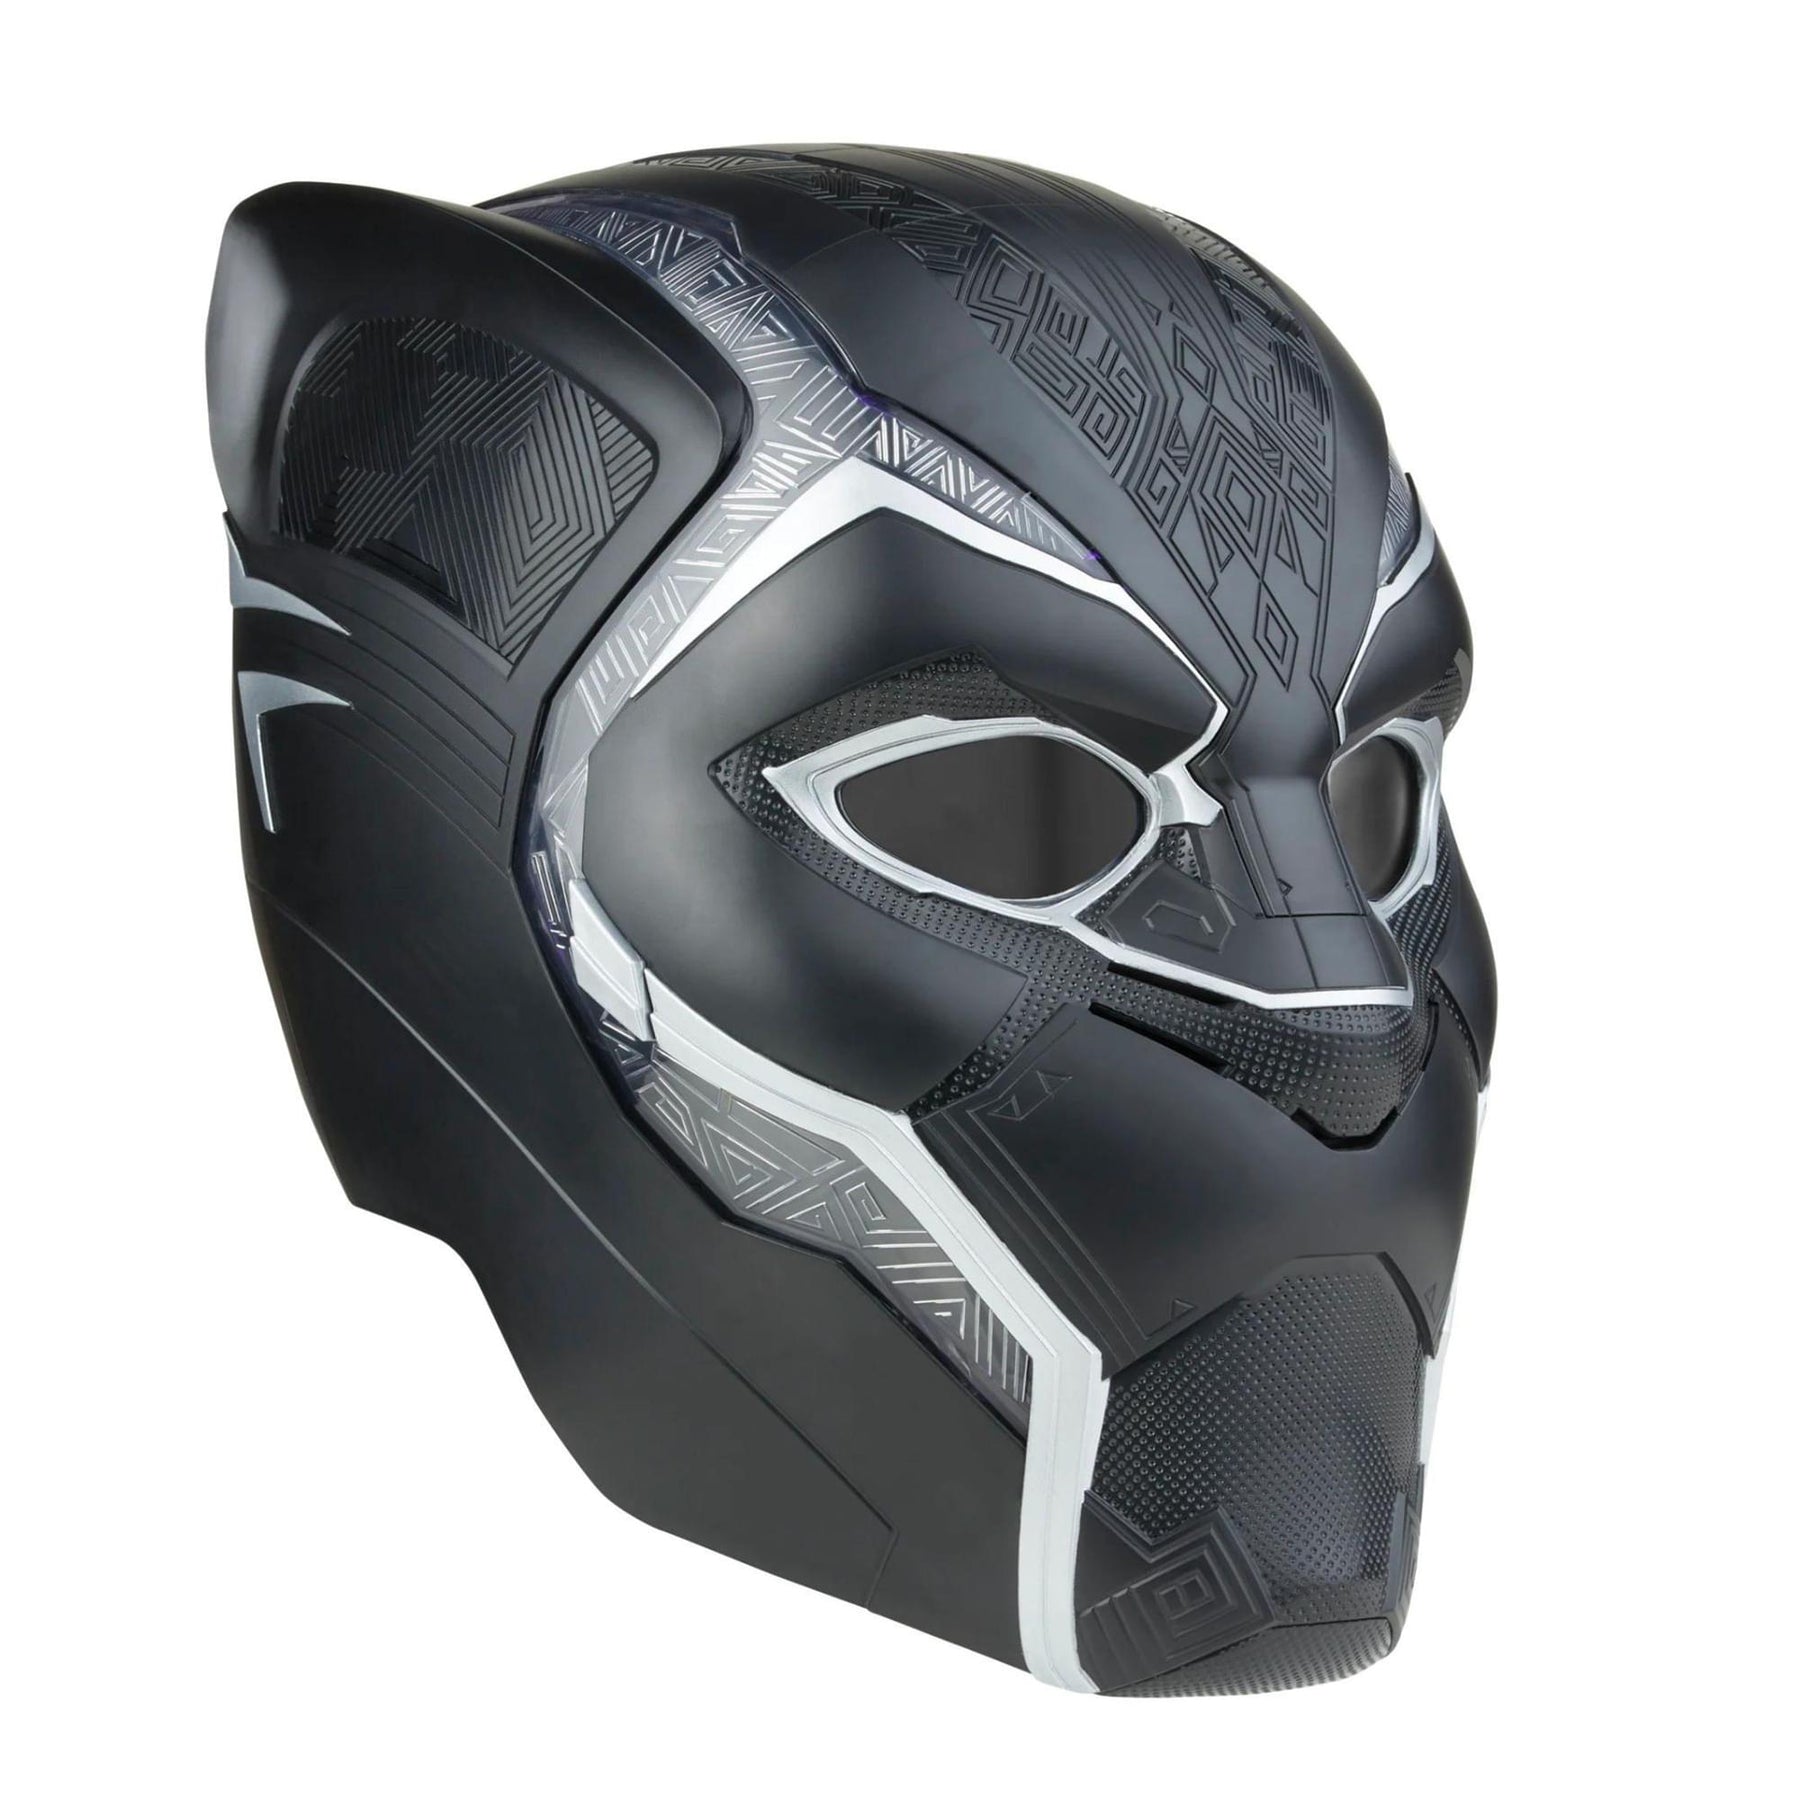 Marvel Legends Black Panther Electronic Roleplay Helmet